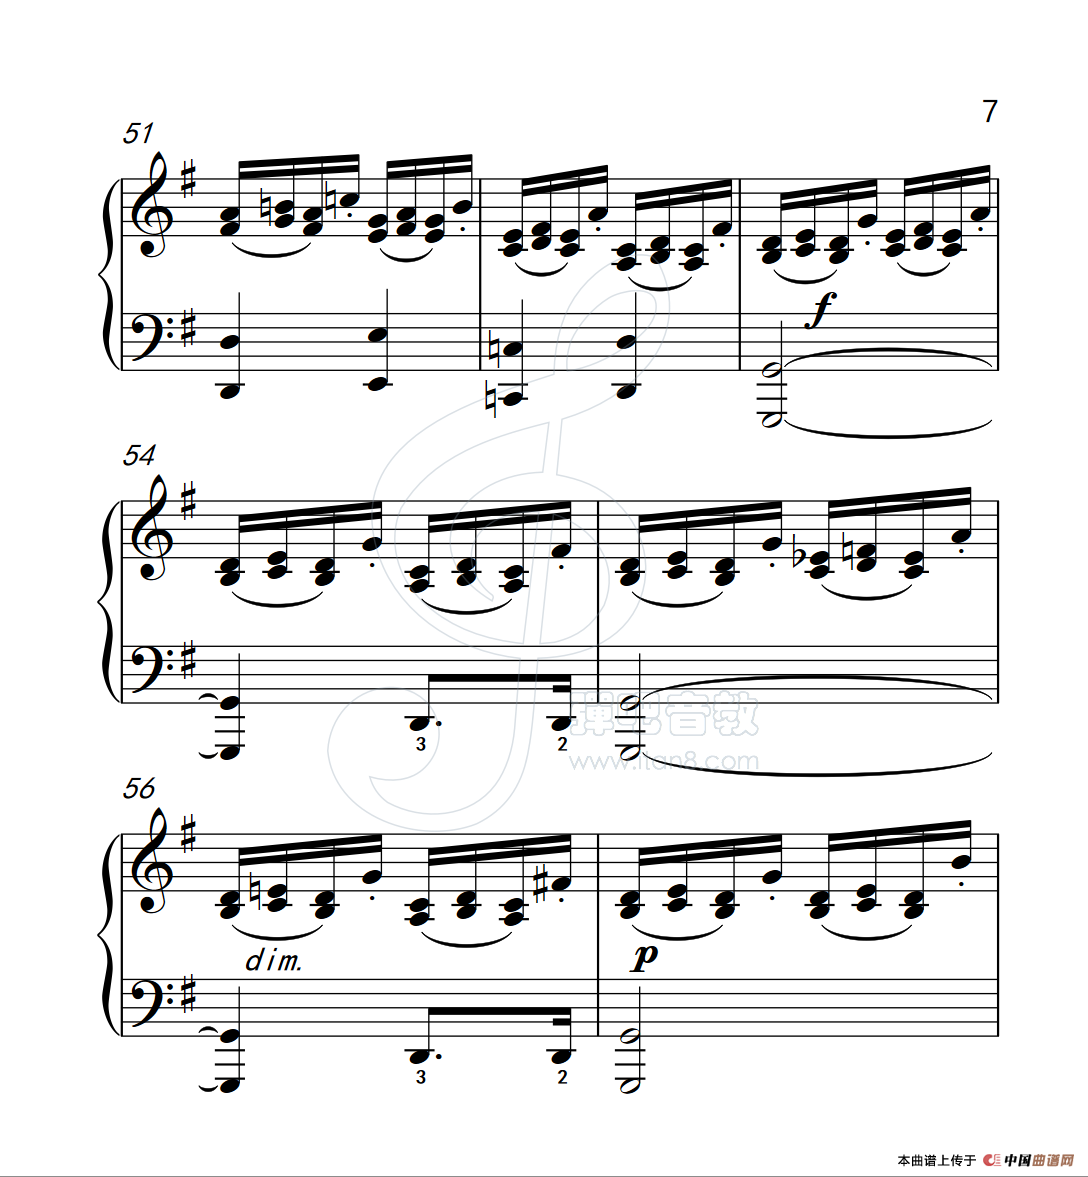 《练习曲 28》钢琴曲谱图分享